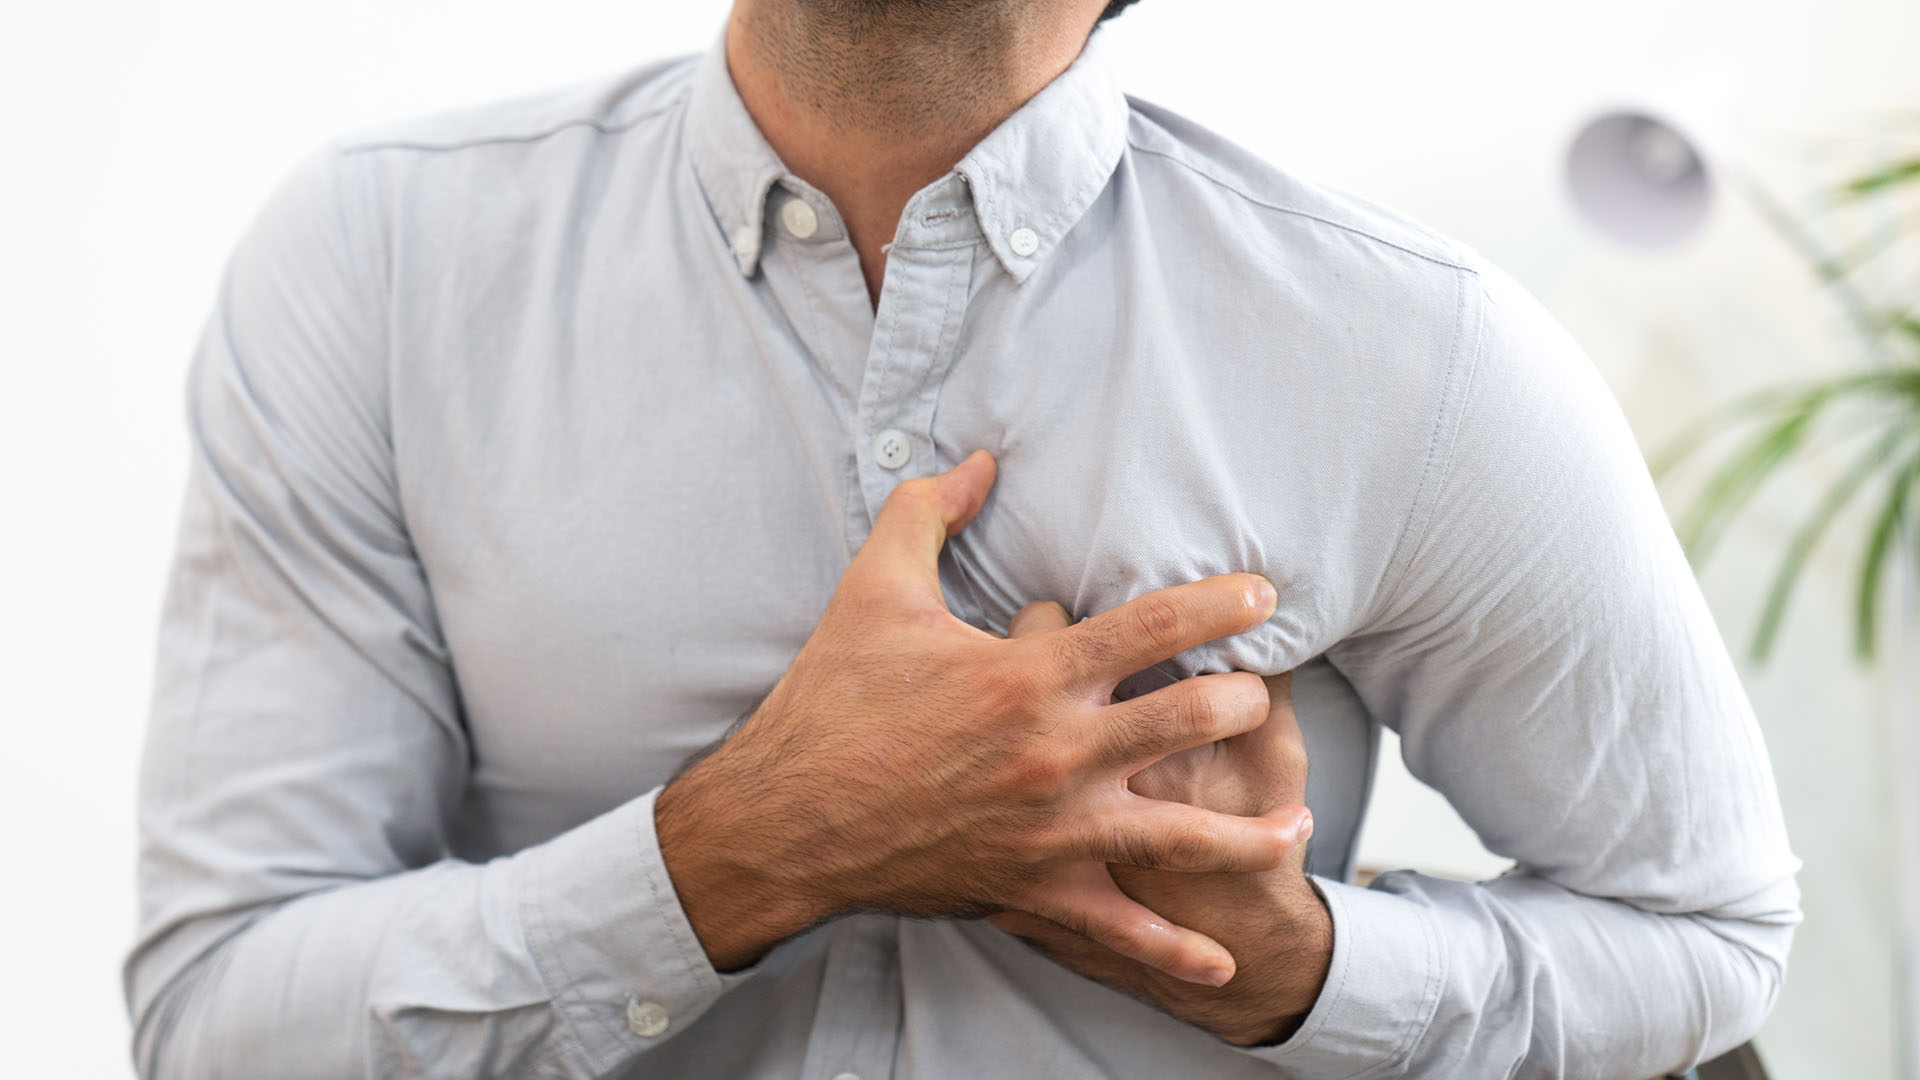 La IC es un síndrome clínico que representa la etapa avanzada de varias cardiopatías, entre ellas, las valvulopatías, miocardiopatías y cardiopatías congénitas